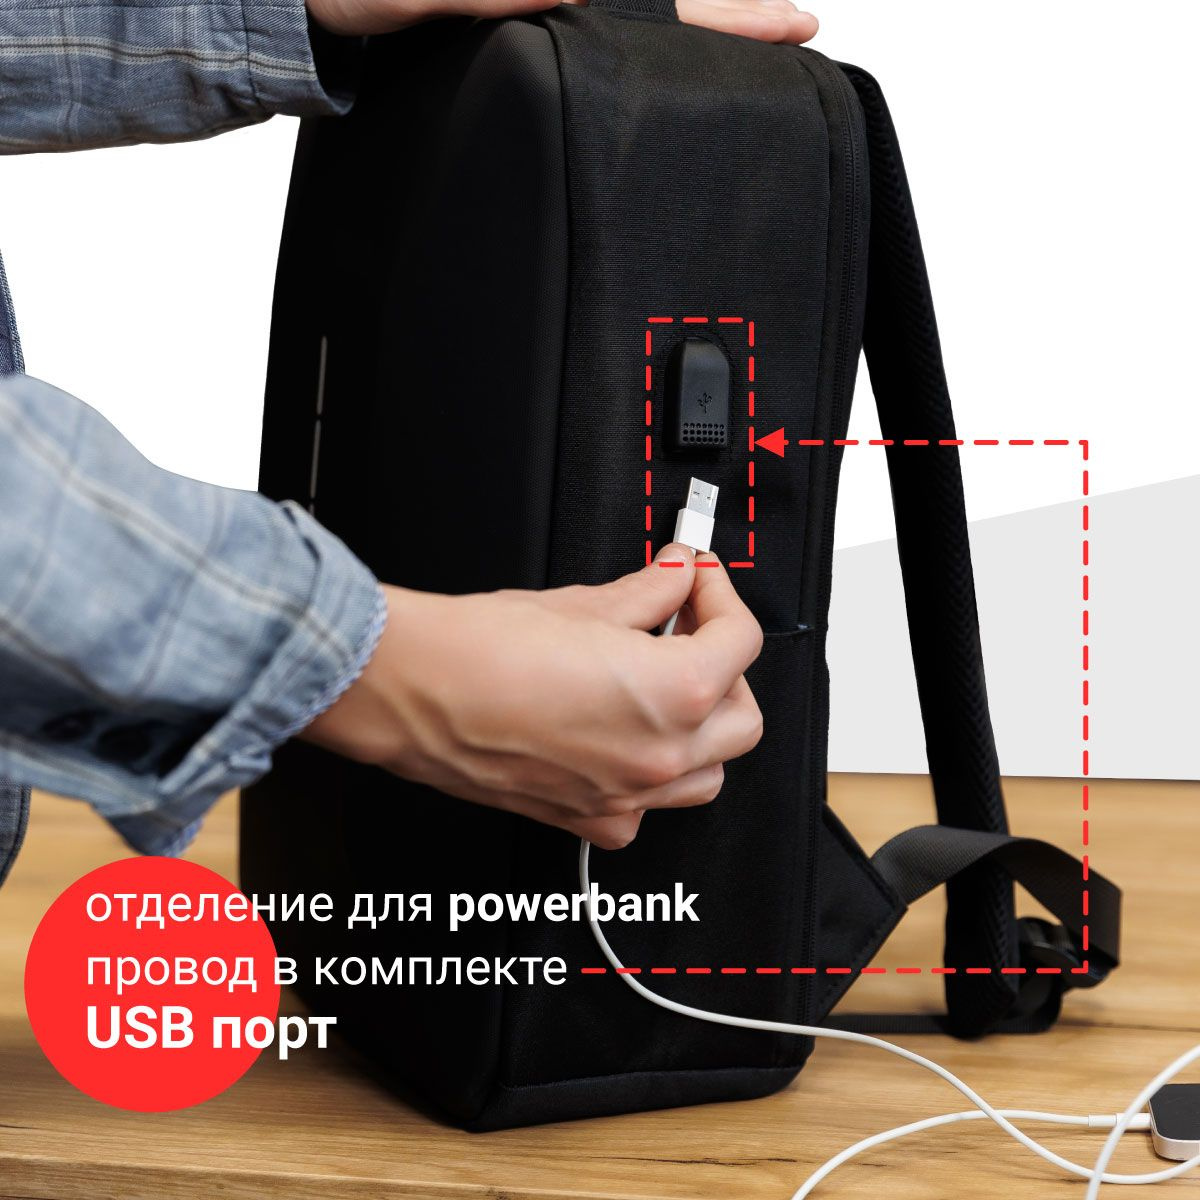 Для современных и мобильных. Встроенный USB порт позволит заряжать телефон на ходу и оставаться на связи в офисе и в путешествиях. В комплекте мужского рюкзака предусмотрен USB кабель. Практичный концептуальный рюкзак для ноутбука будет полезен для поддержания заряда ваших девайсов.